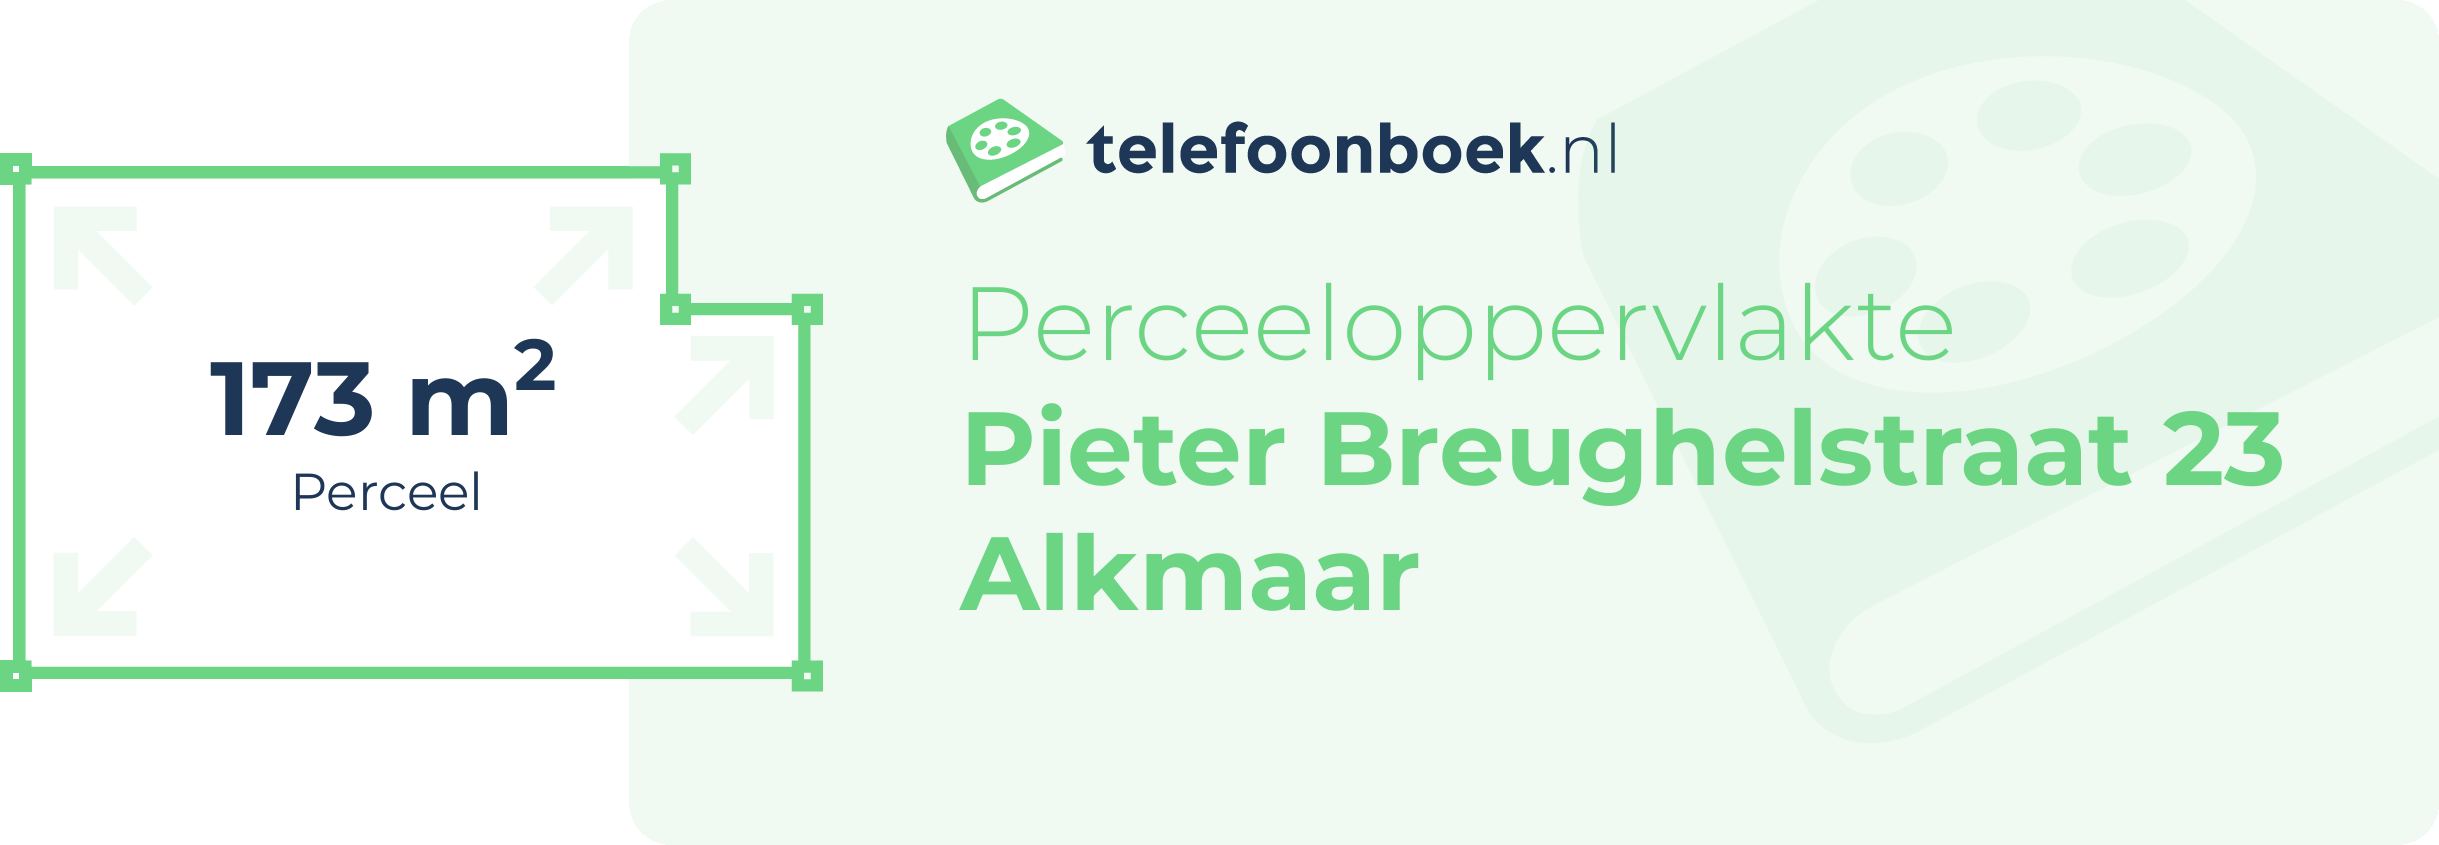 Perceeloppervlakte Pieter Breughelstraat 23 Alkmaar